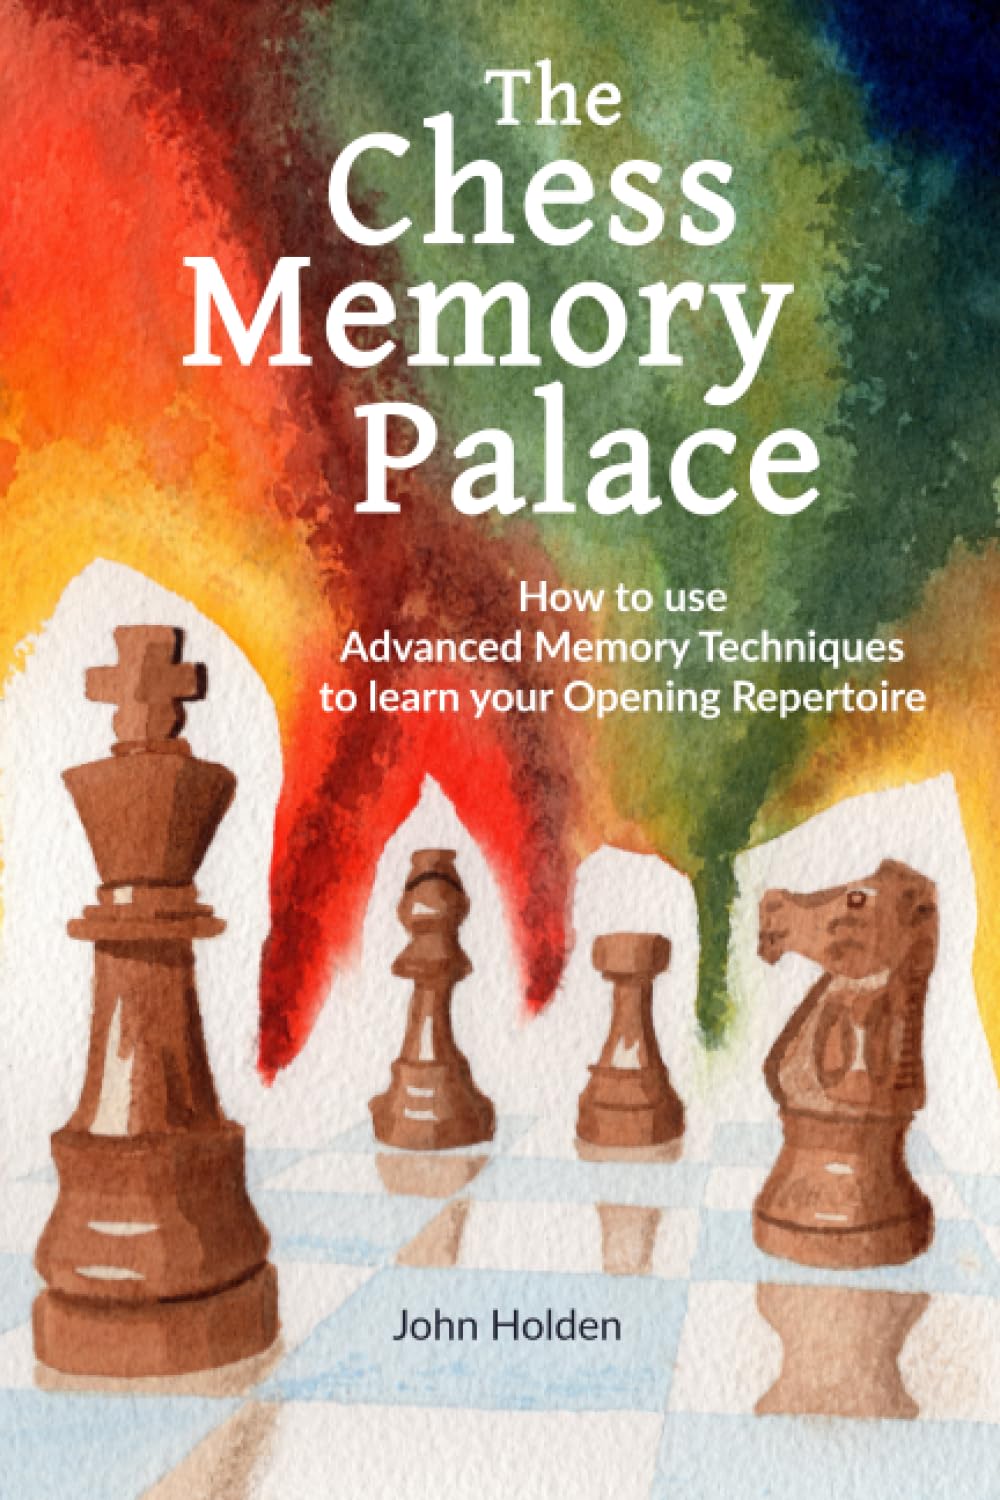 The Chess Memory Palace, John Holden, Amazon, ISBN-13 ‏ : ‎ 979-8370251146